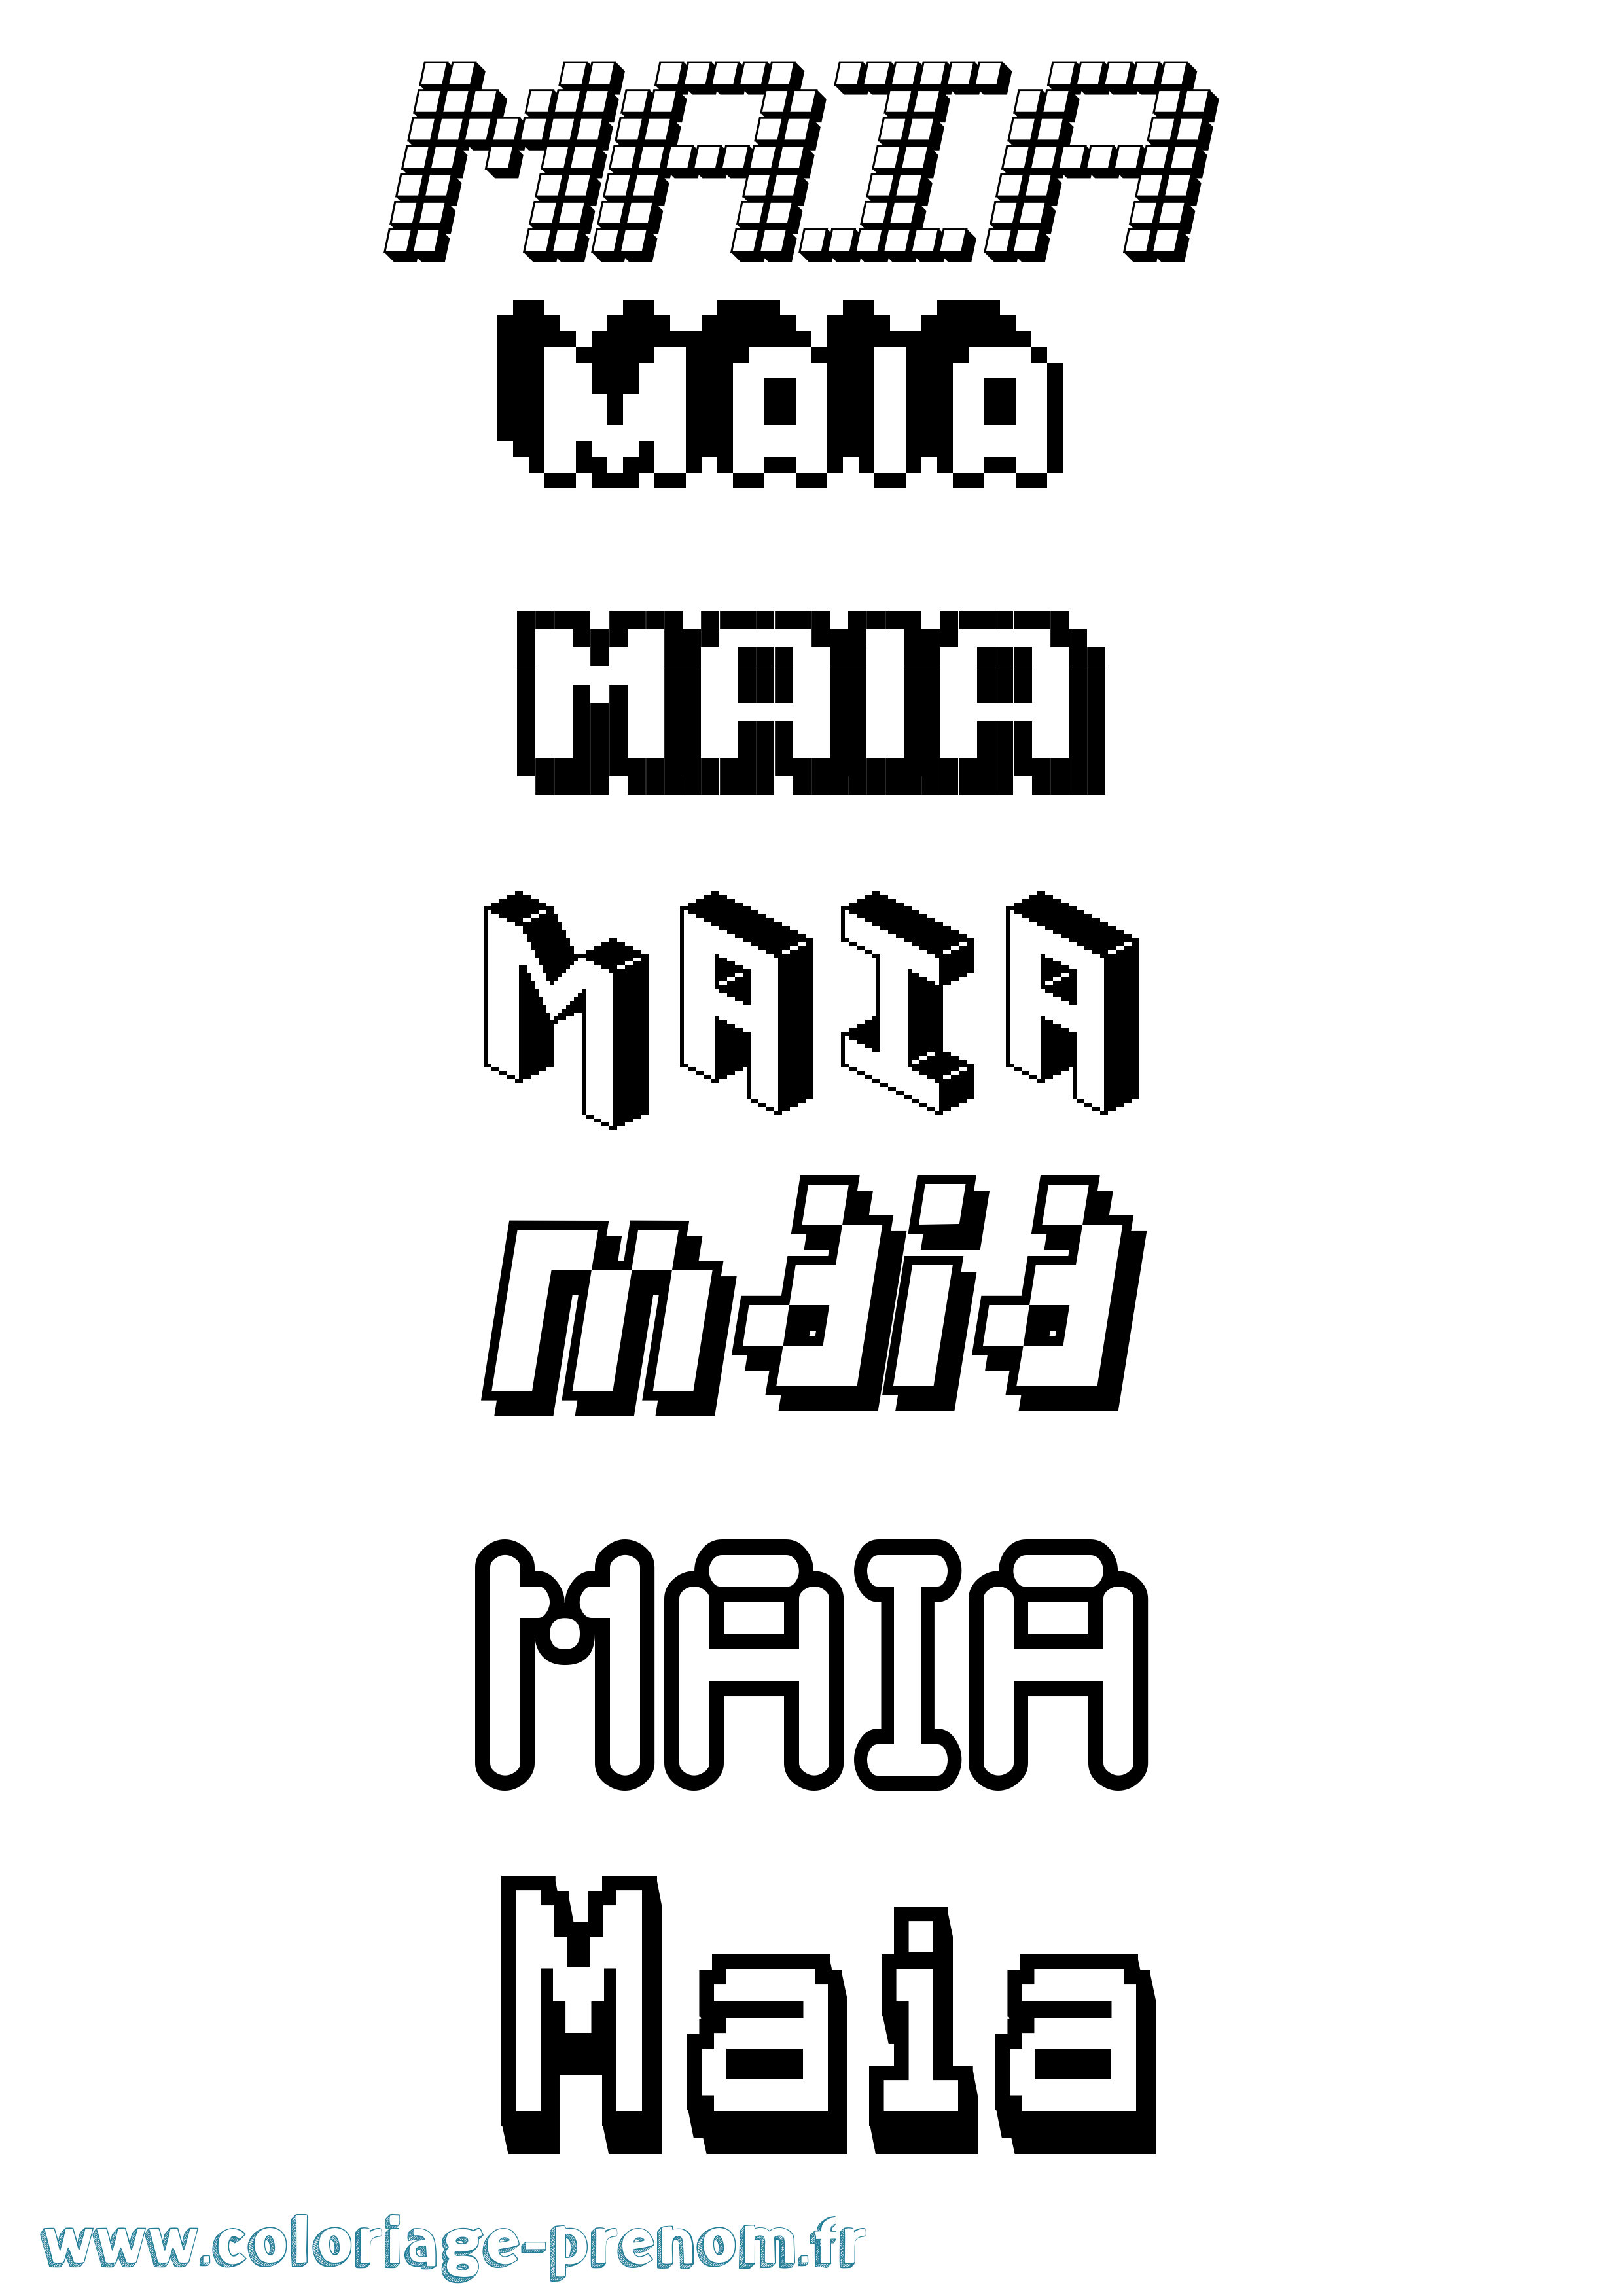 Coloriage prénom Maia Pixel